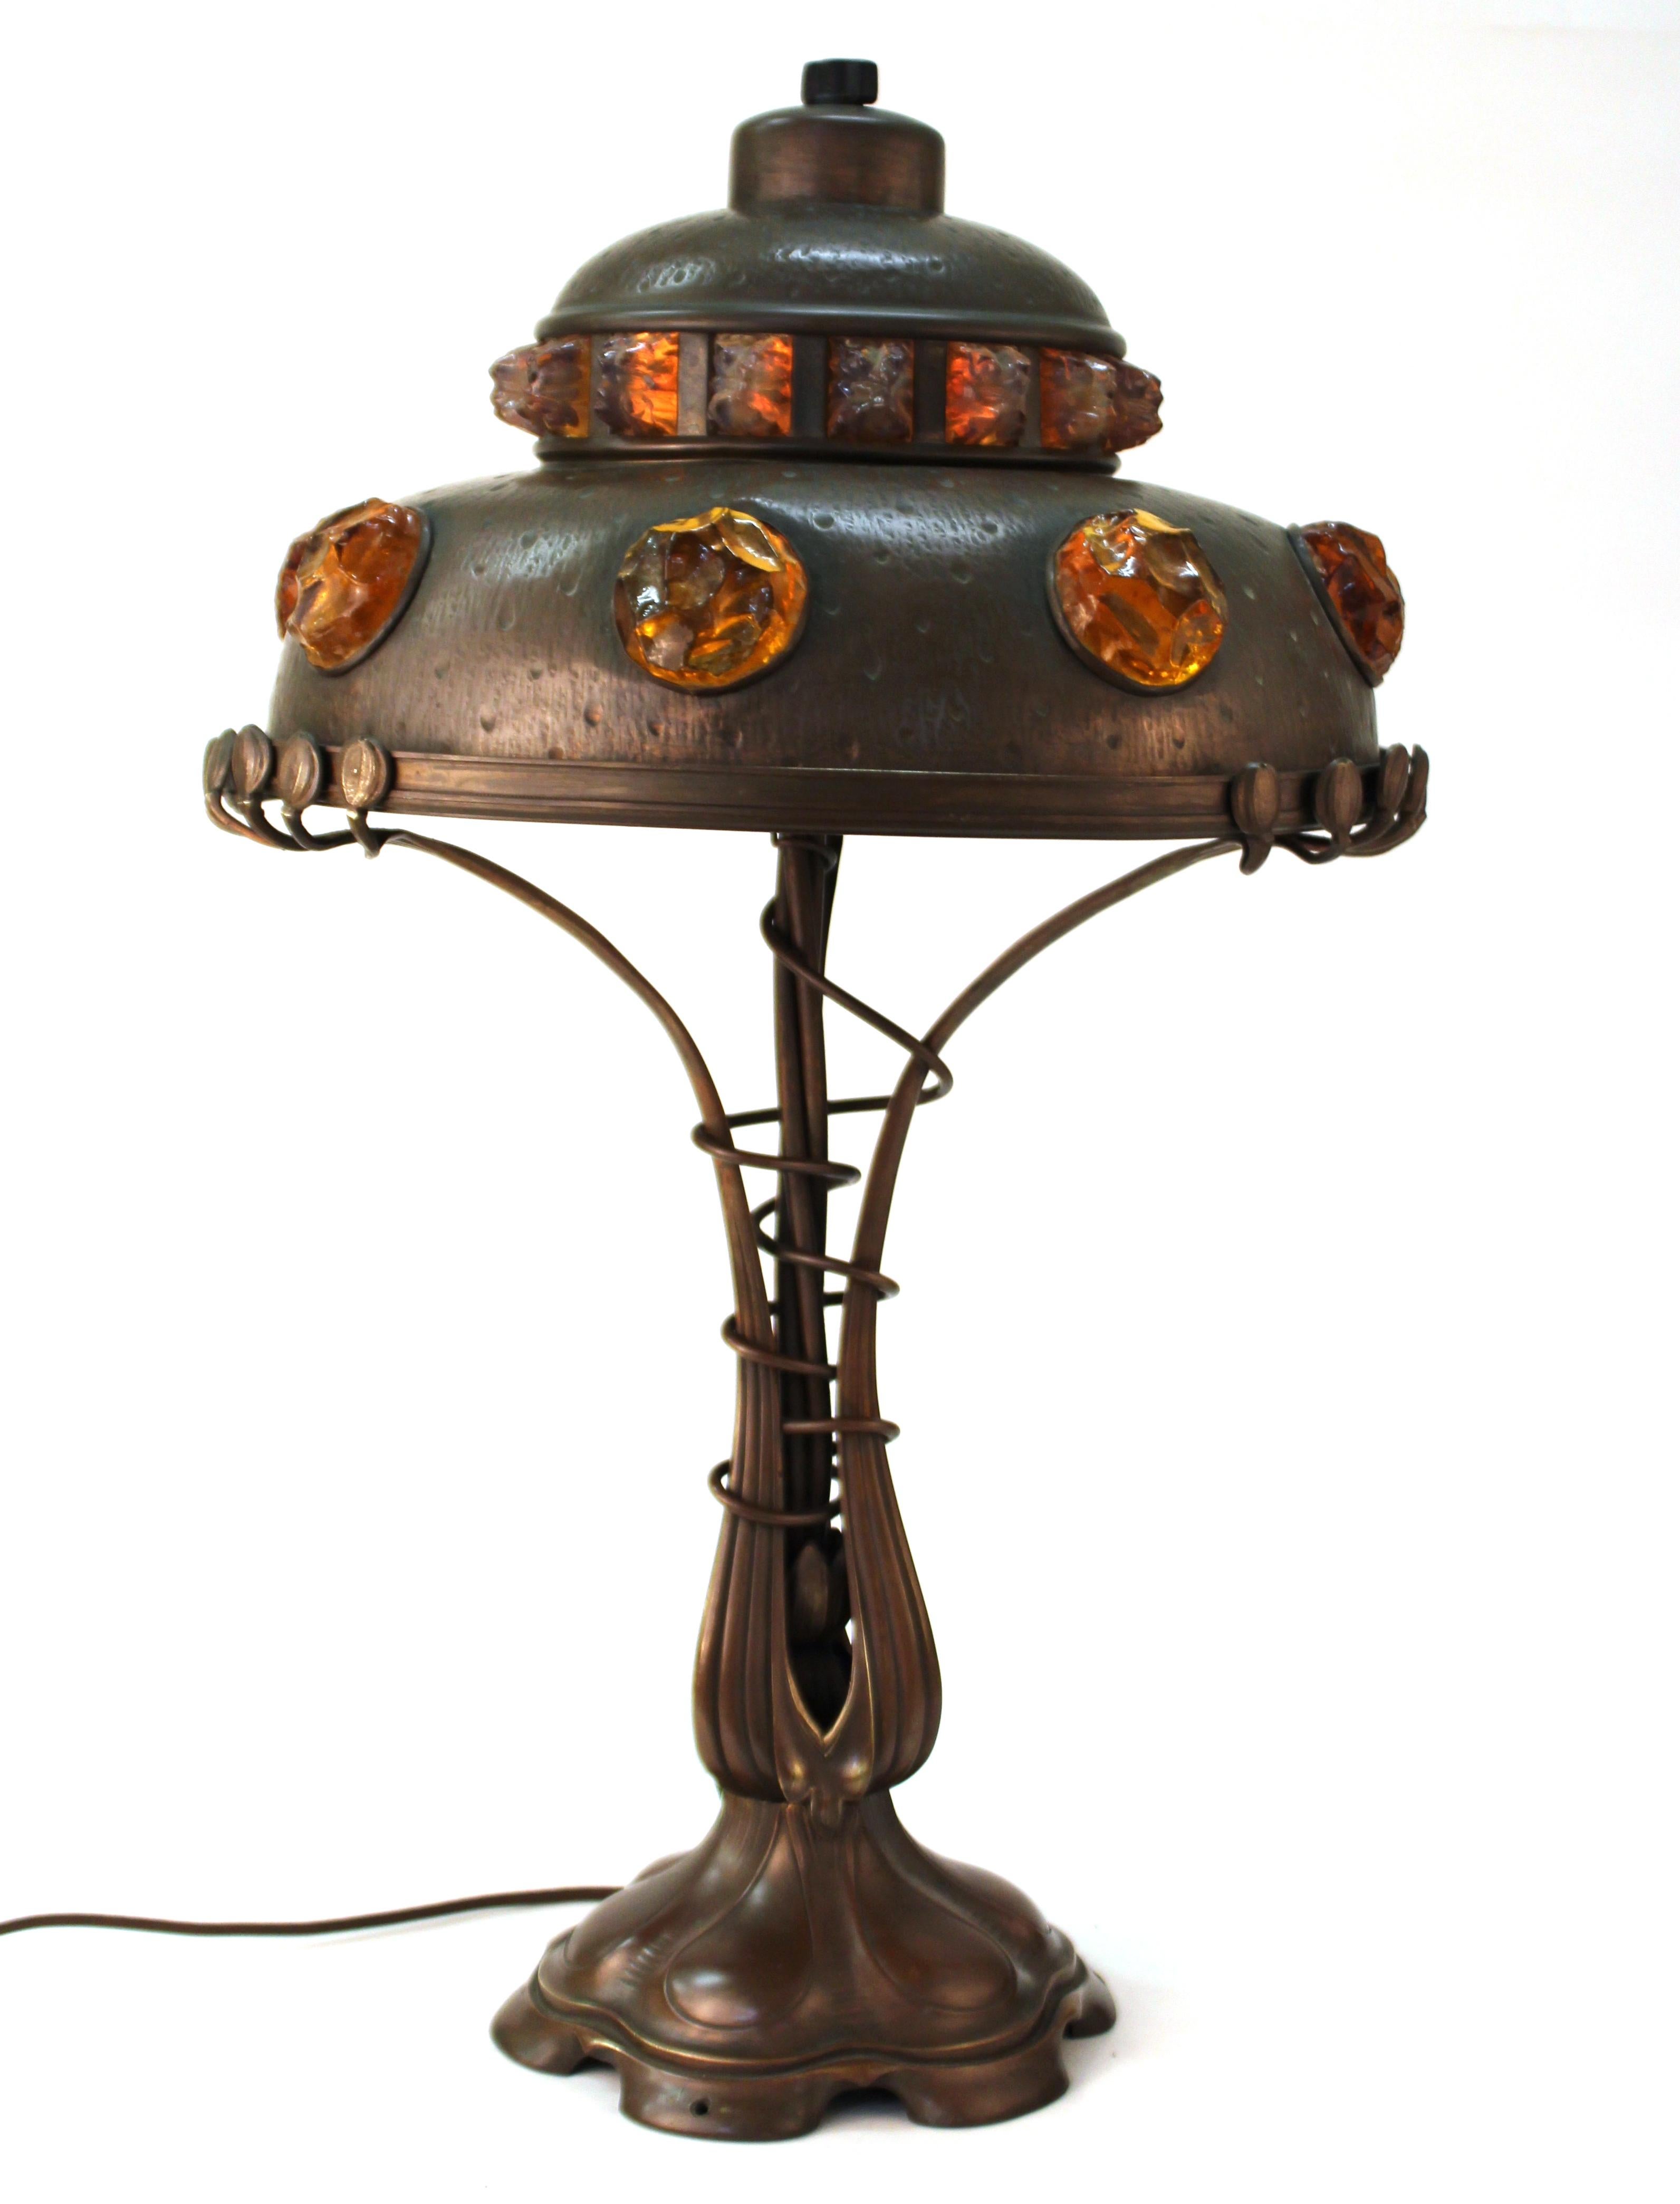 Lampe de table autrichienne d'époque Art Nouveau en fonte de bronze et laiton repoussé, avec des bijoux en verre chunk insérés dans l'abat-jour. La pièce a été fabriquée en Autriche dans les années 1900 et a été recâblée. Il fonctionne avec trois